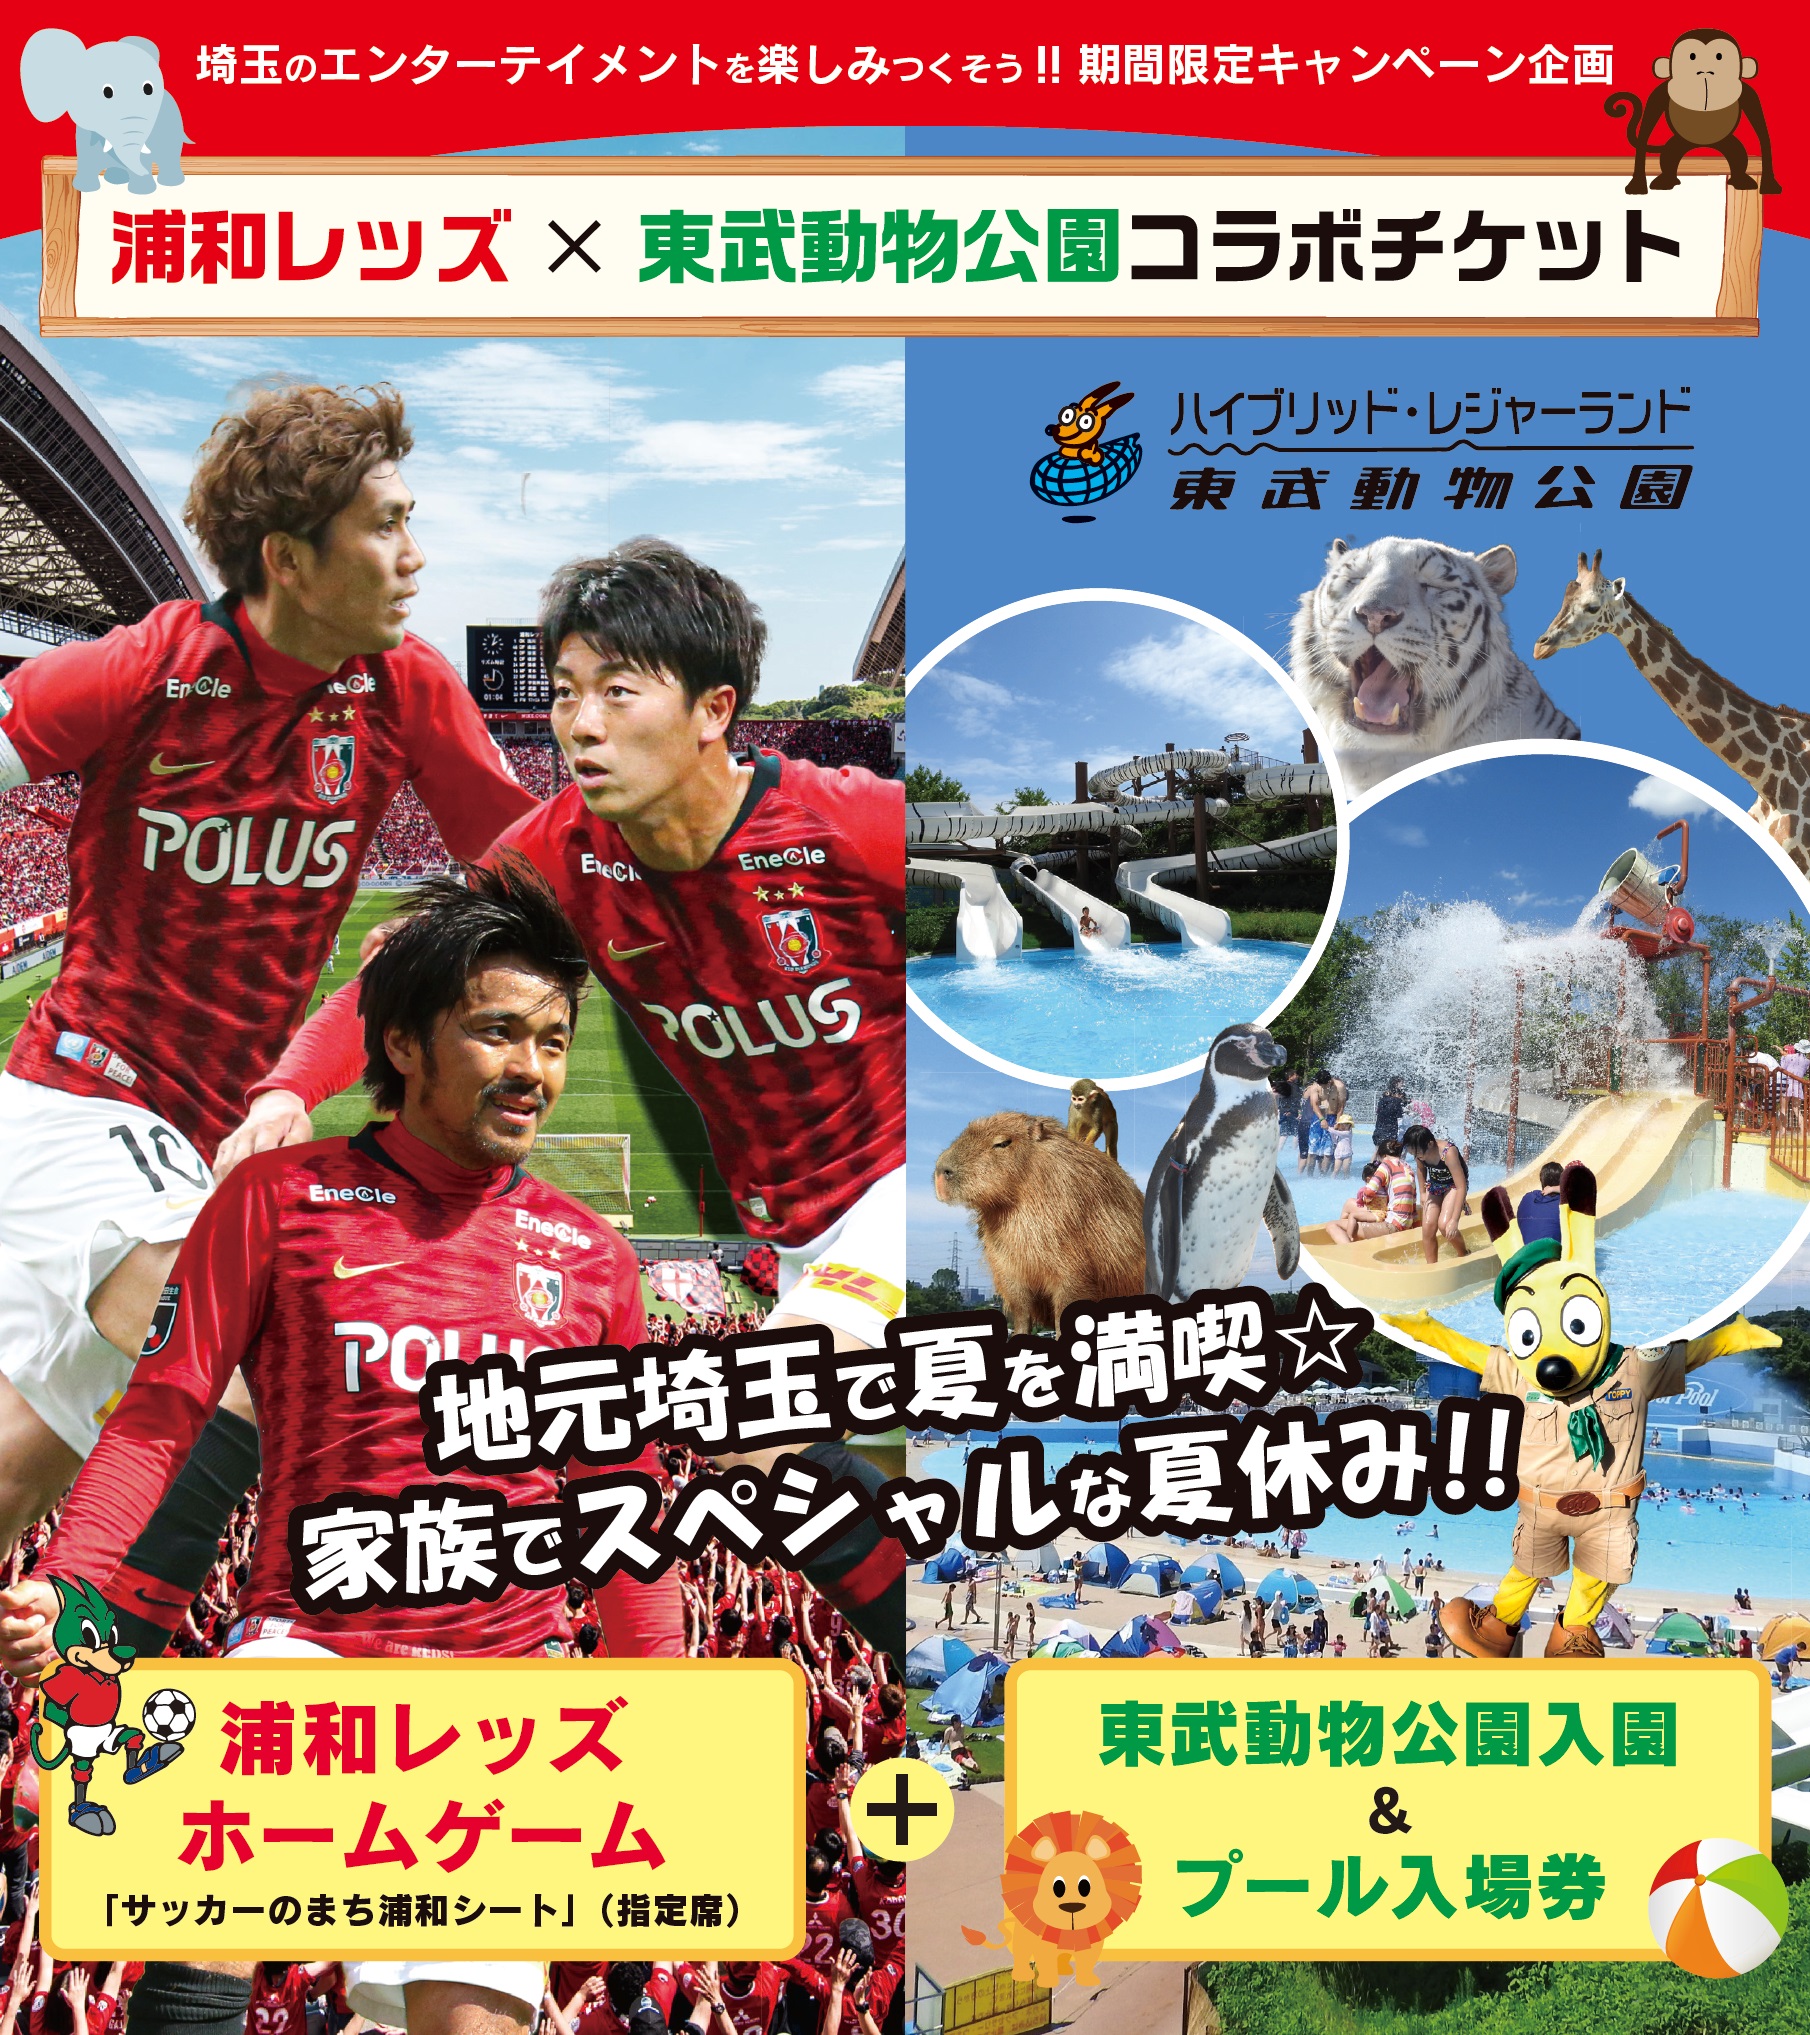 埼玉を楽しみつくそう 浦和レッズと東武動物公園が コラボチケット を販売 浦和レッズのプレスリリース